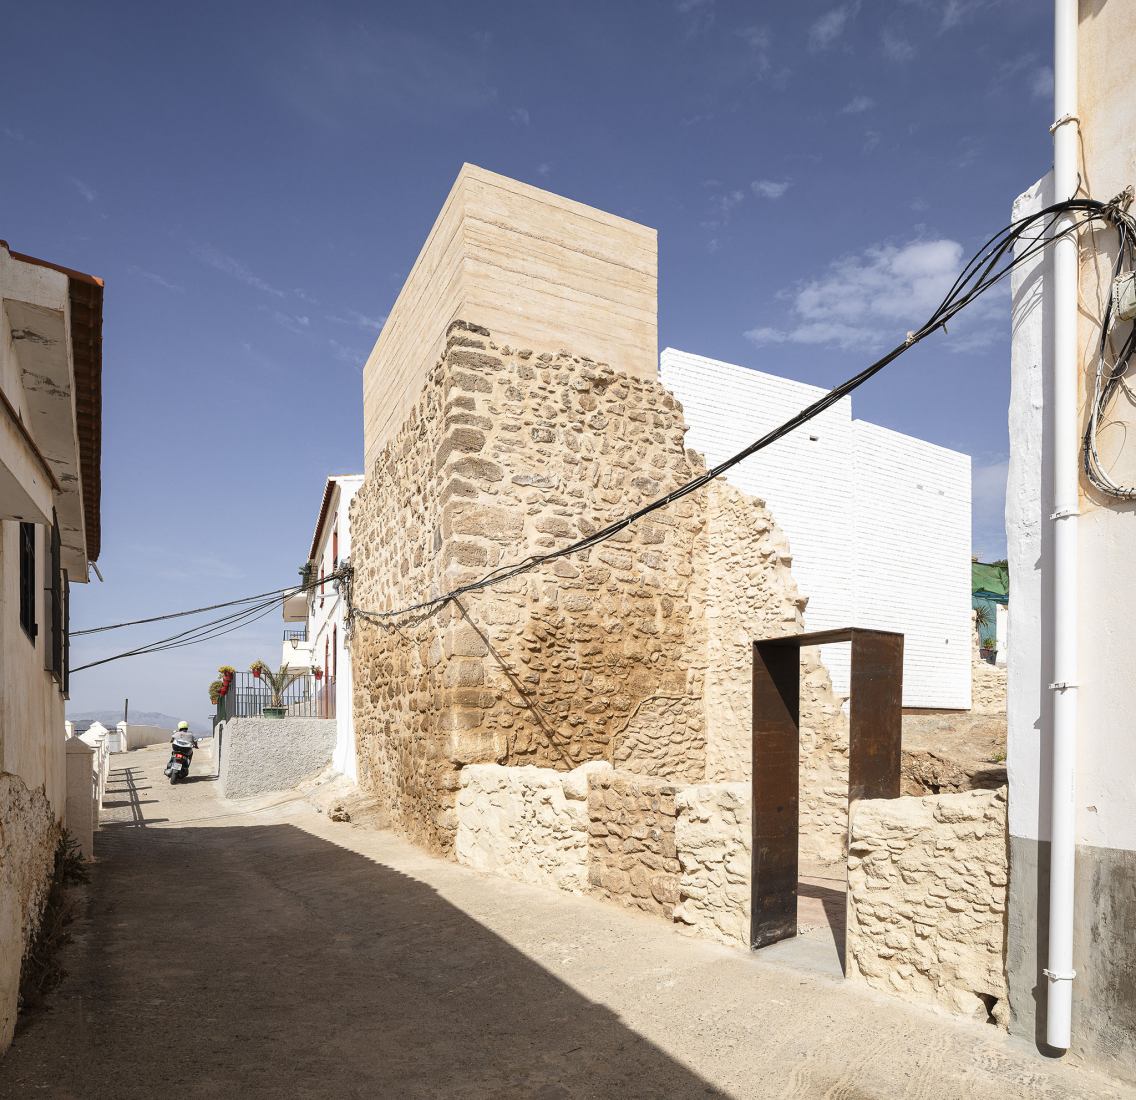 Puesta en valor del Torreón y Lienzo de Muralla Árabes en el Cerro de las Torres por WaterScales arquitectos. Fotografía por Fernando Alda.